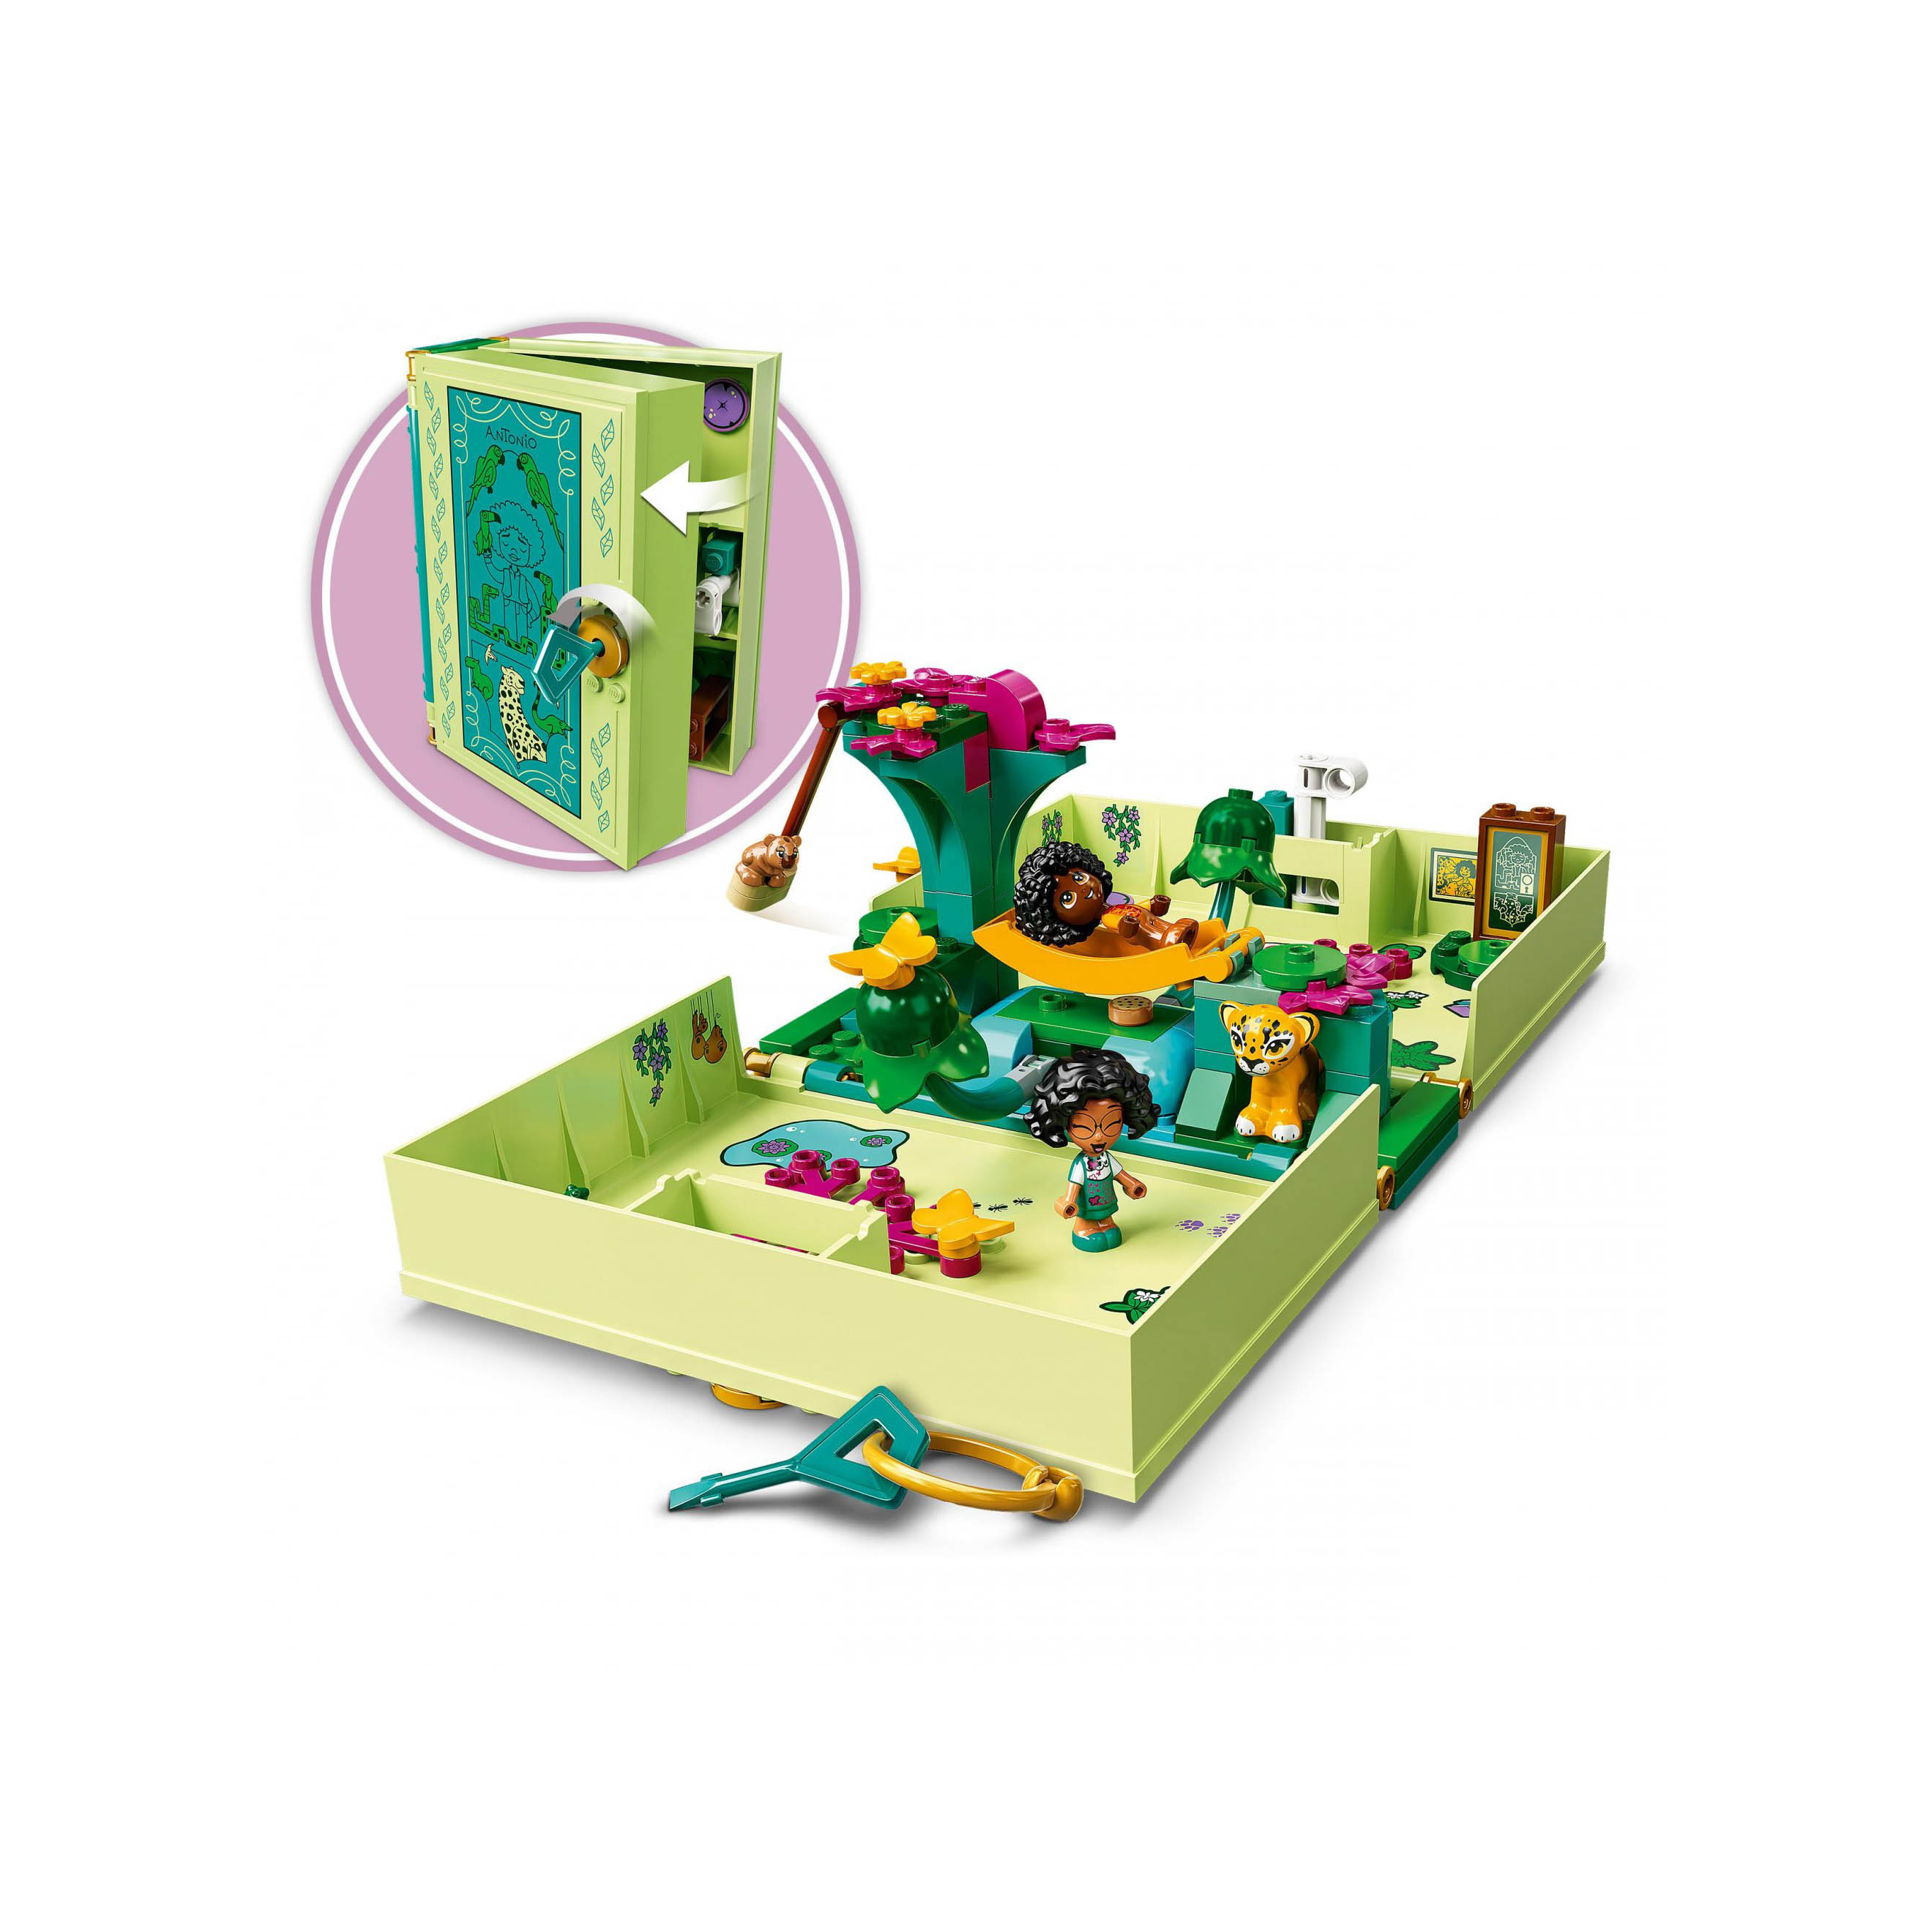 LEGO Disney Princess la Porta Magica di Antonio, con Casa sull'albero, Giochi P 43200, , large